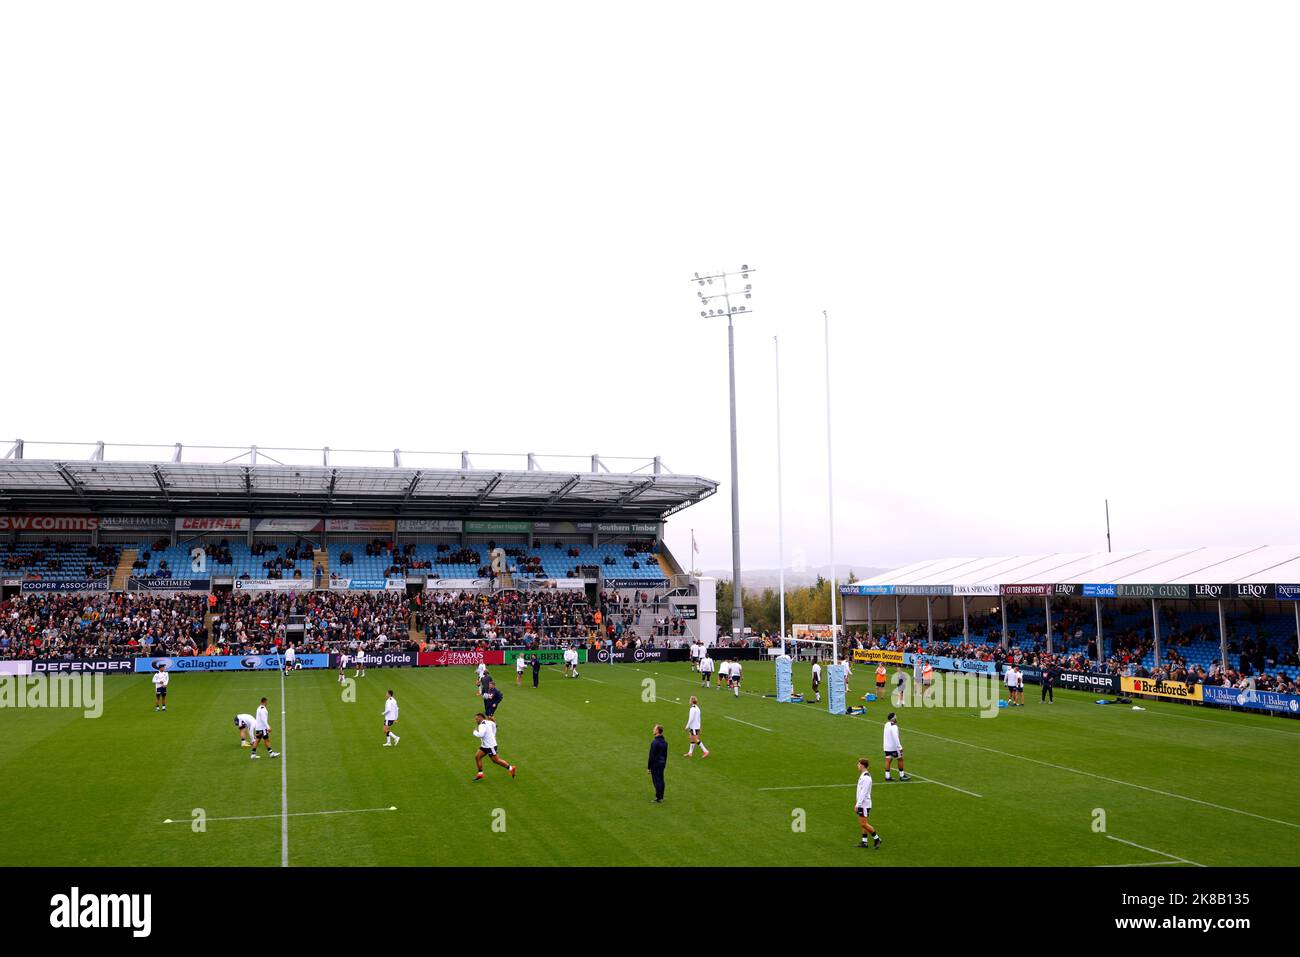 Die Spieler wärmen sich vor dem Spiel der Gallagher Premiership in Sandy Park, Exeter, auf. Bilddatum: Samstag, 22. Oktober 2022. Stockfoto